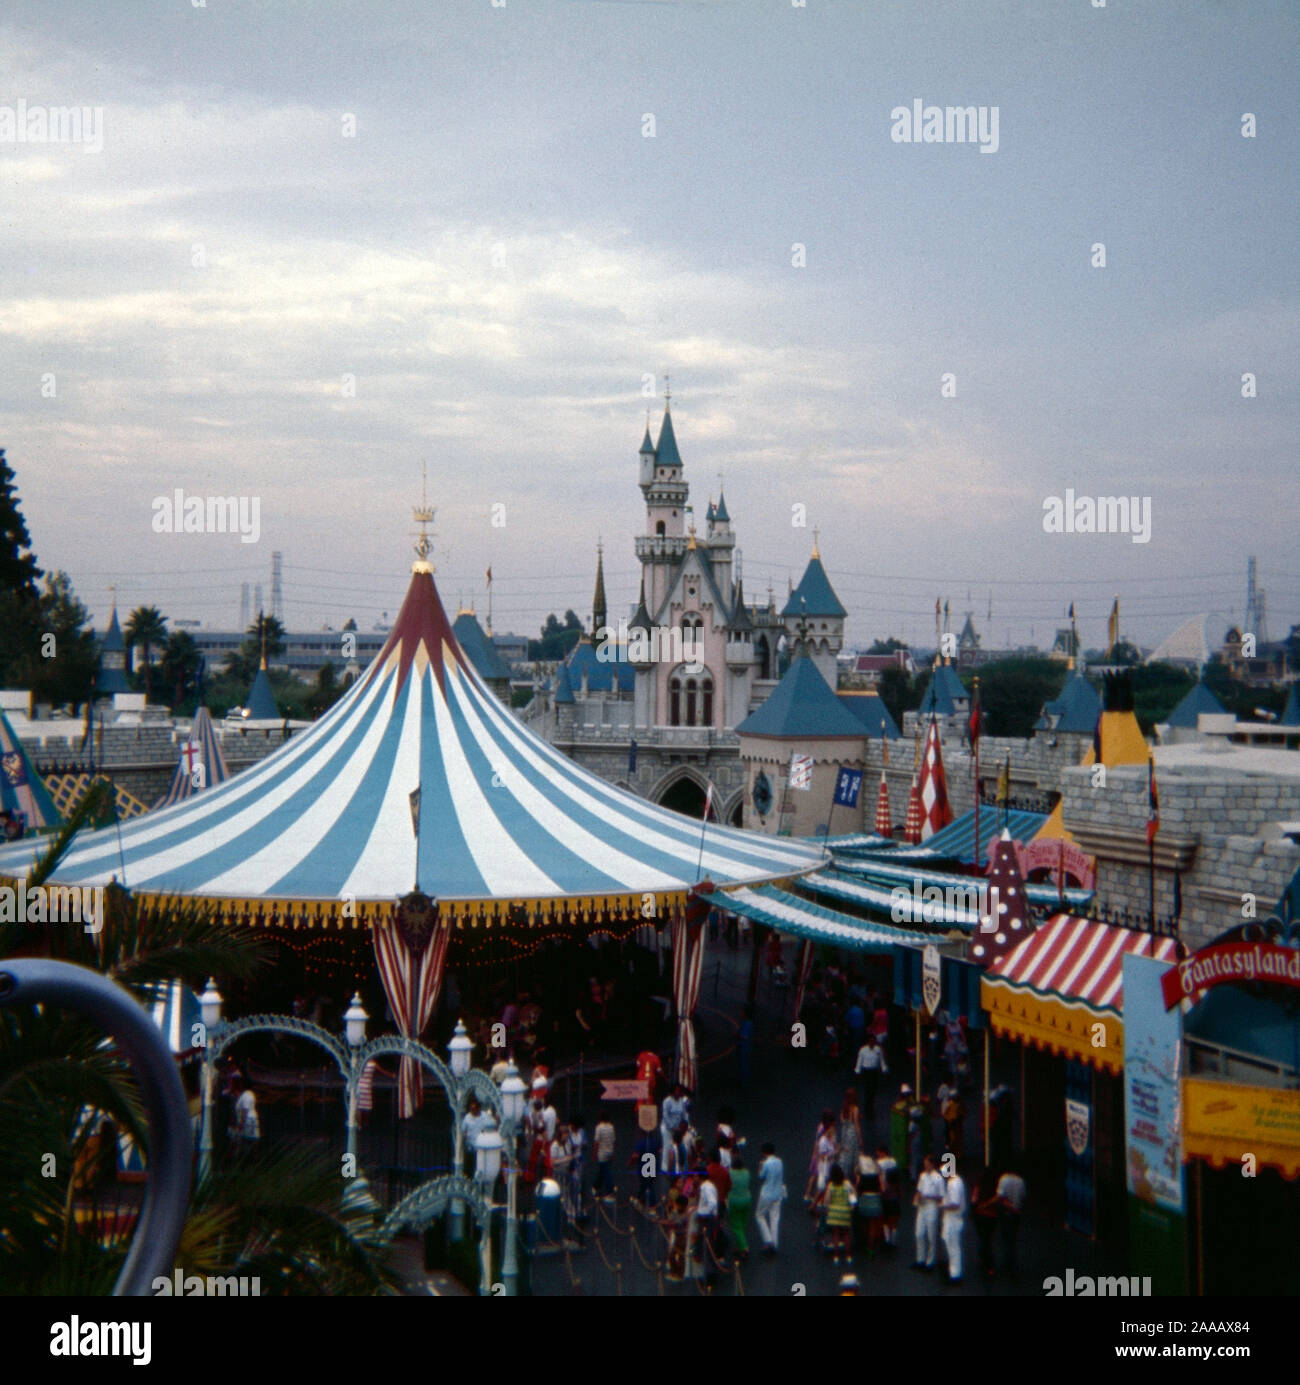 Jahrgang September 1972 Foto, Merry-go-round und Cinderella's Castle in Fantasyland im Disneyland Park in Anaheim, Kalifornien. Quelle: Original 35 mm Transparenz Stockfoto